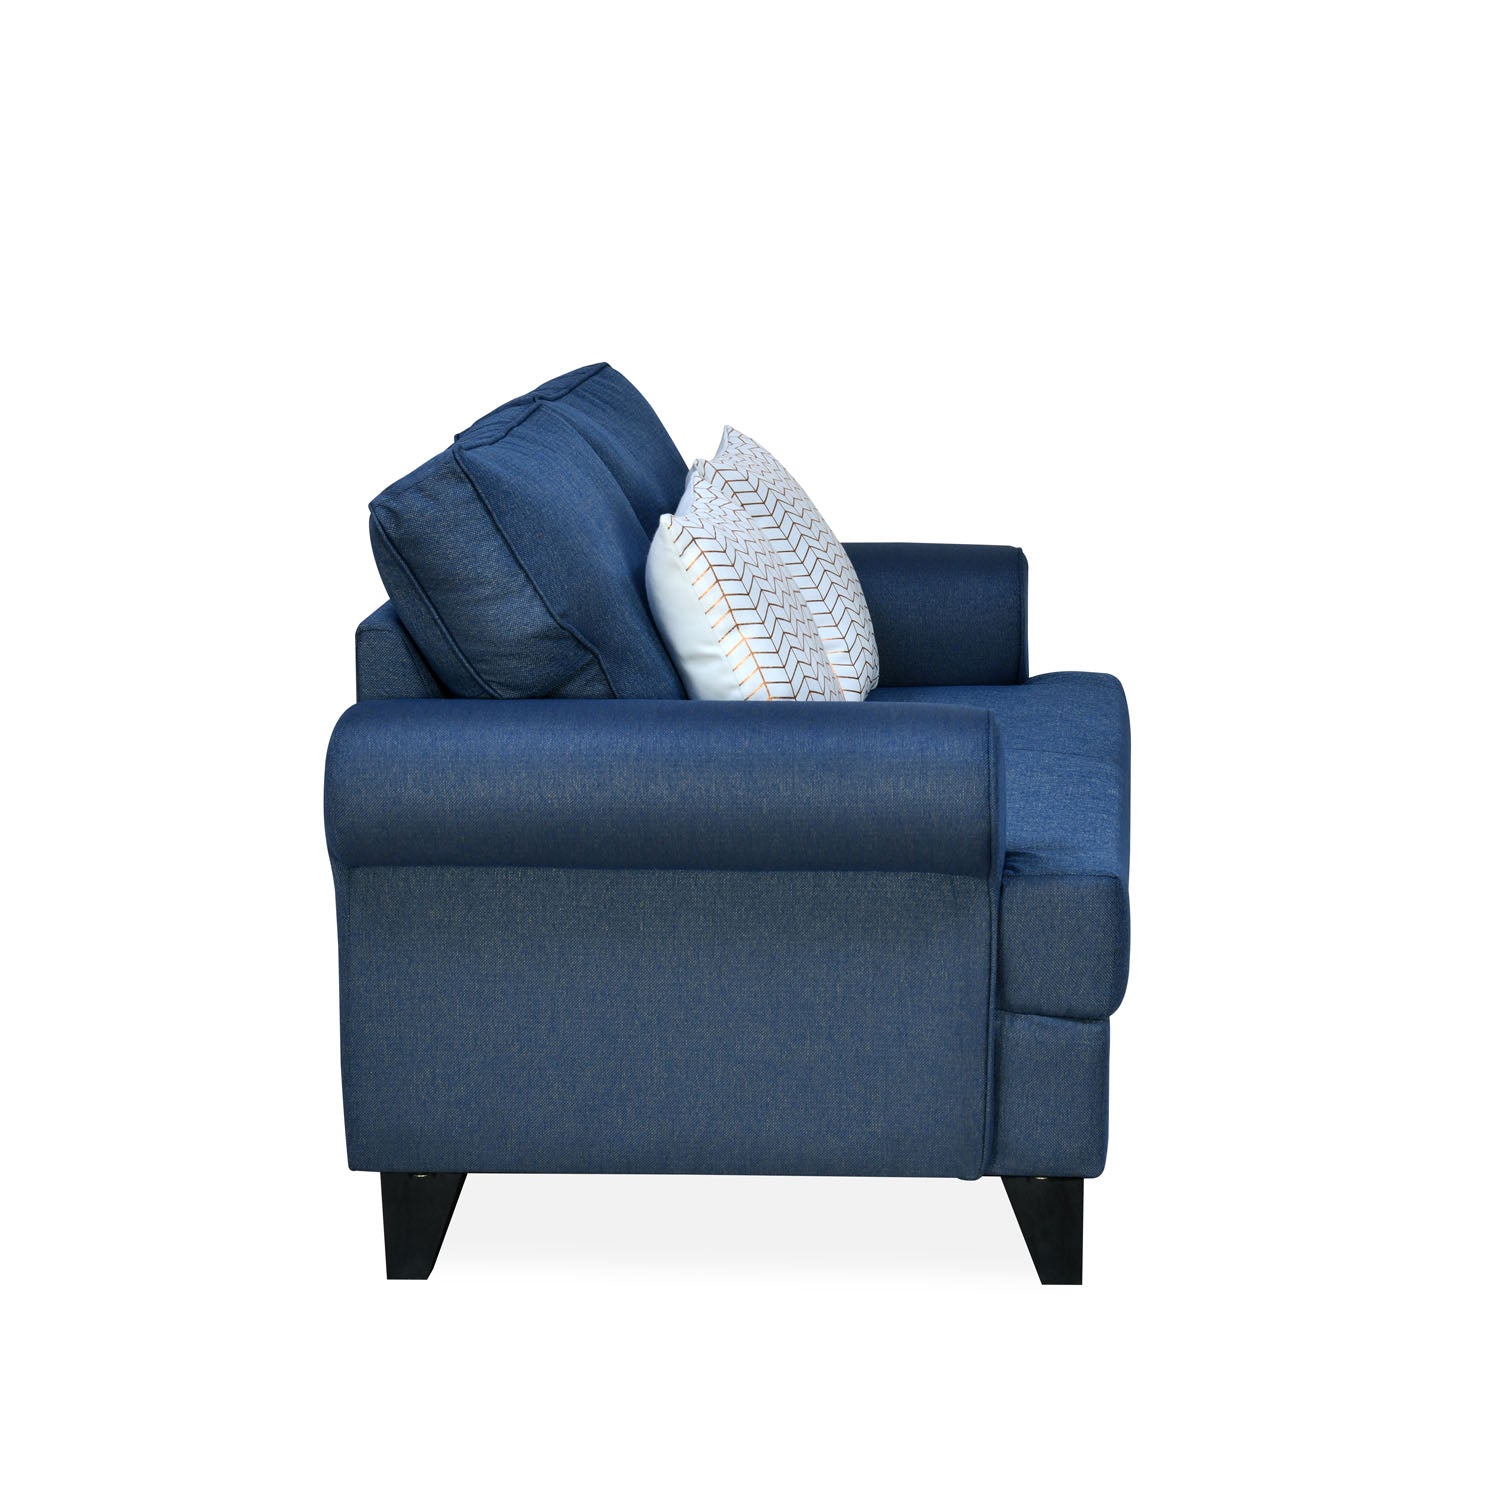 Velma Fabric 2 Seater Sofa with Cushion (Blue)